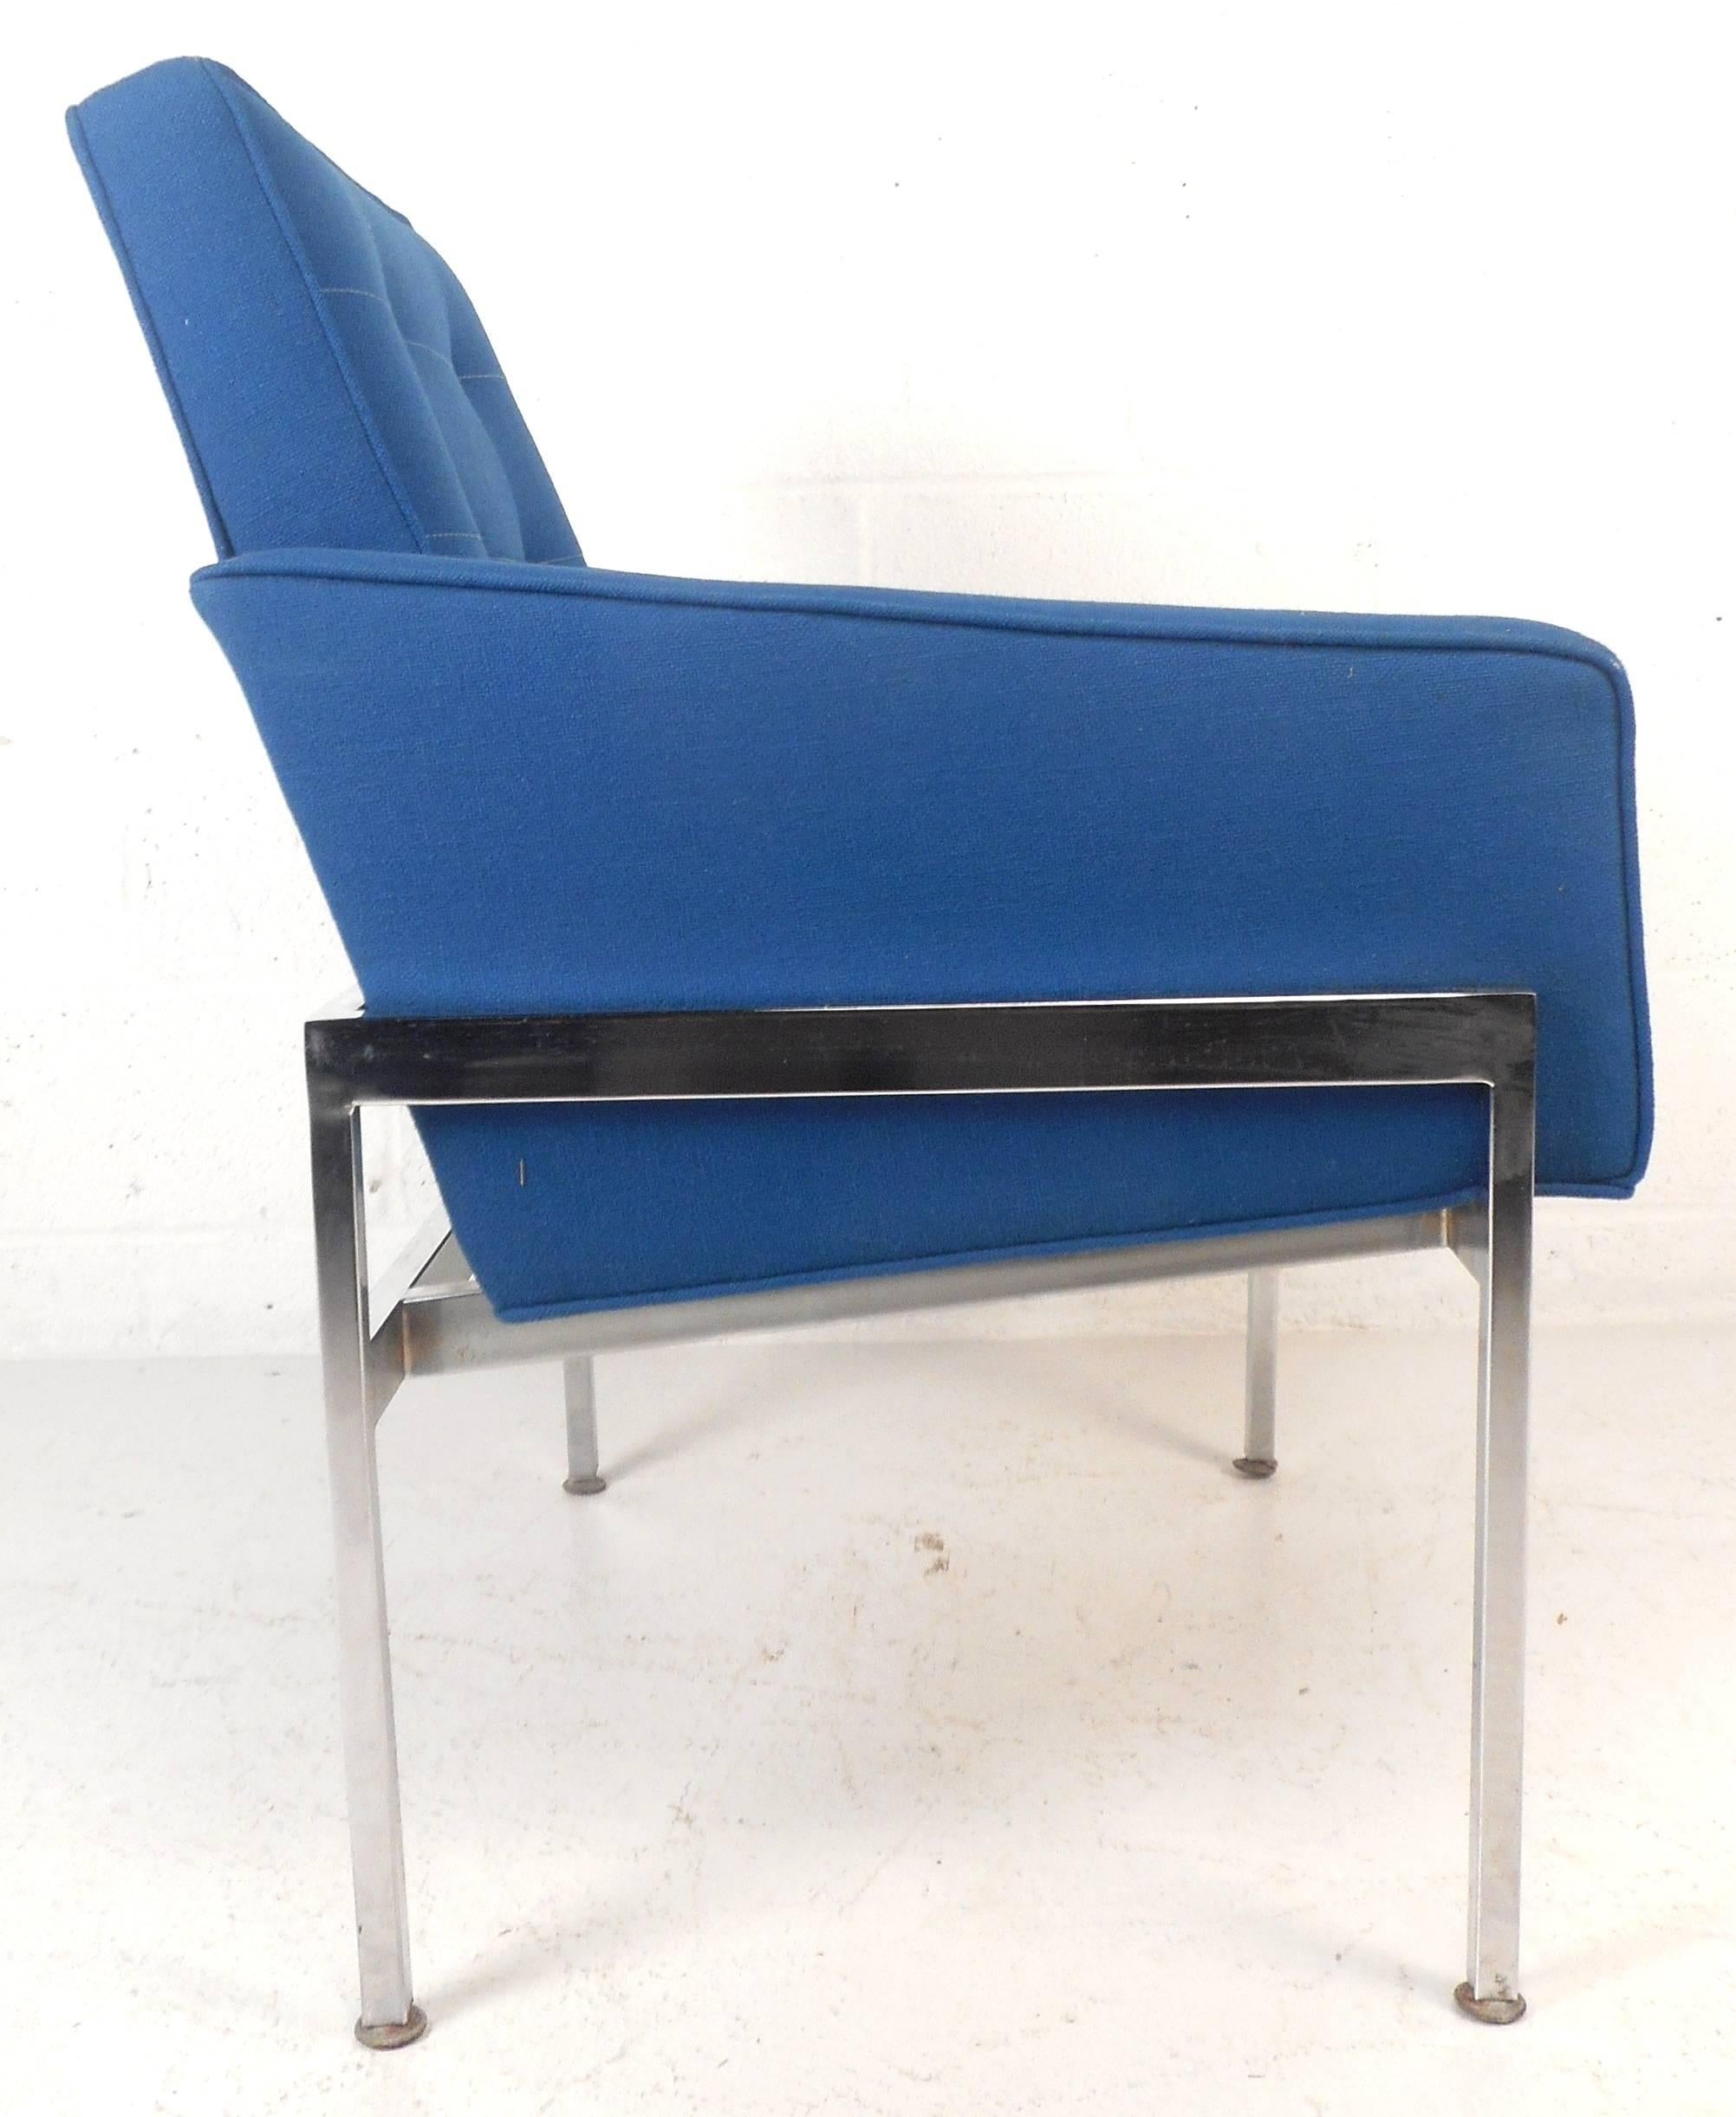 Elegantes Paar Mid-Century Modern Lounge Chairs mit schwerem Chromgestell und königsblauer Tufting-Polsterung. Schlankes Design mit abgewinkelter Rückenlehne und niedrigen Armlehnen für zusätzlichen Komfort. Der weiche Stoff und die dick gepolsterte